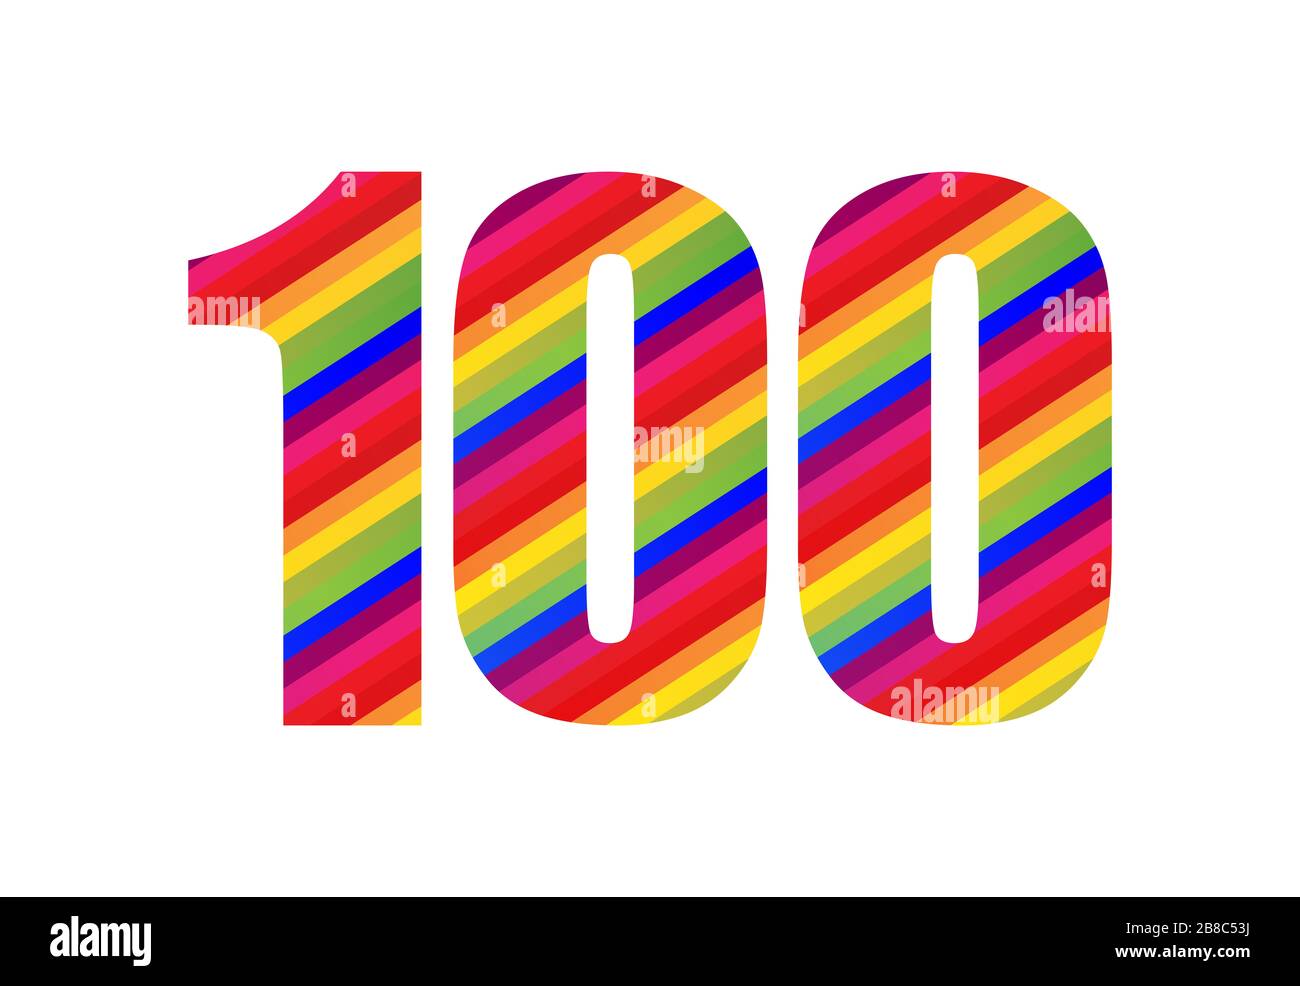 100-Stellige Ziffer Für Rainbow Style. Farbenfrohes, einhundert-zahliger Vektorgrafik-Design, isoliert auf weißem Hintergrund. Stockfoto